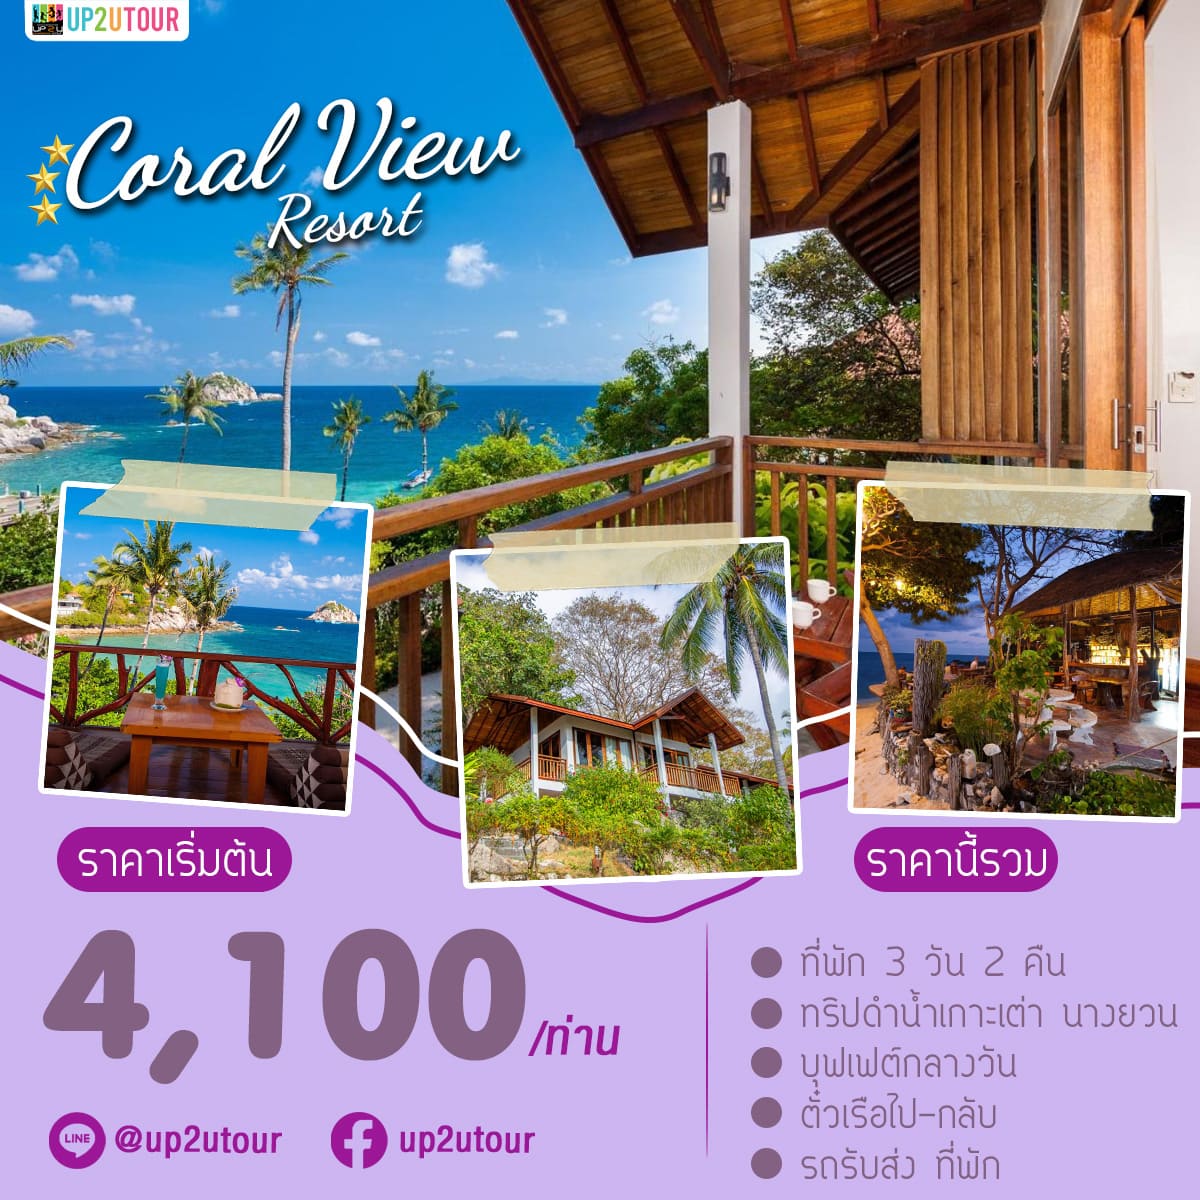 Coral View เกาะเต่า ราคาเริ่มต้นที่ 4,100 บาท/ท่าน